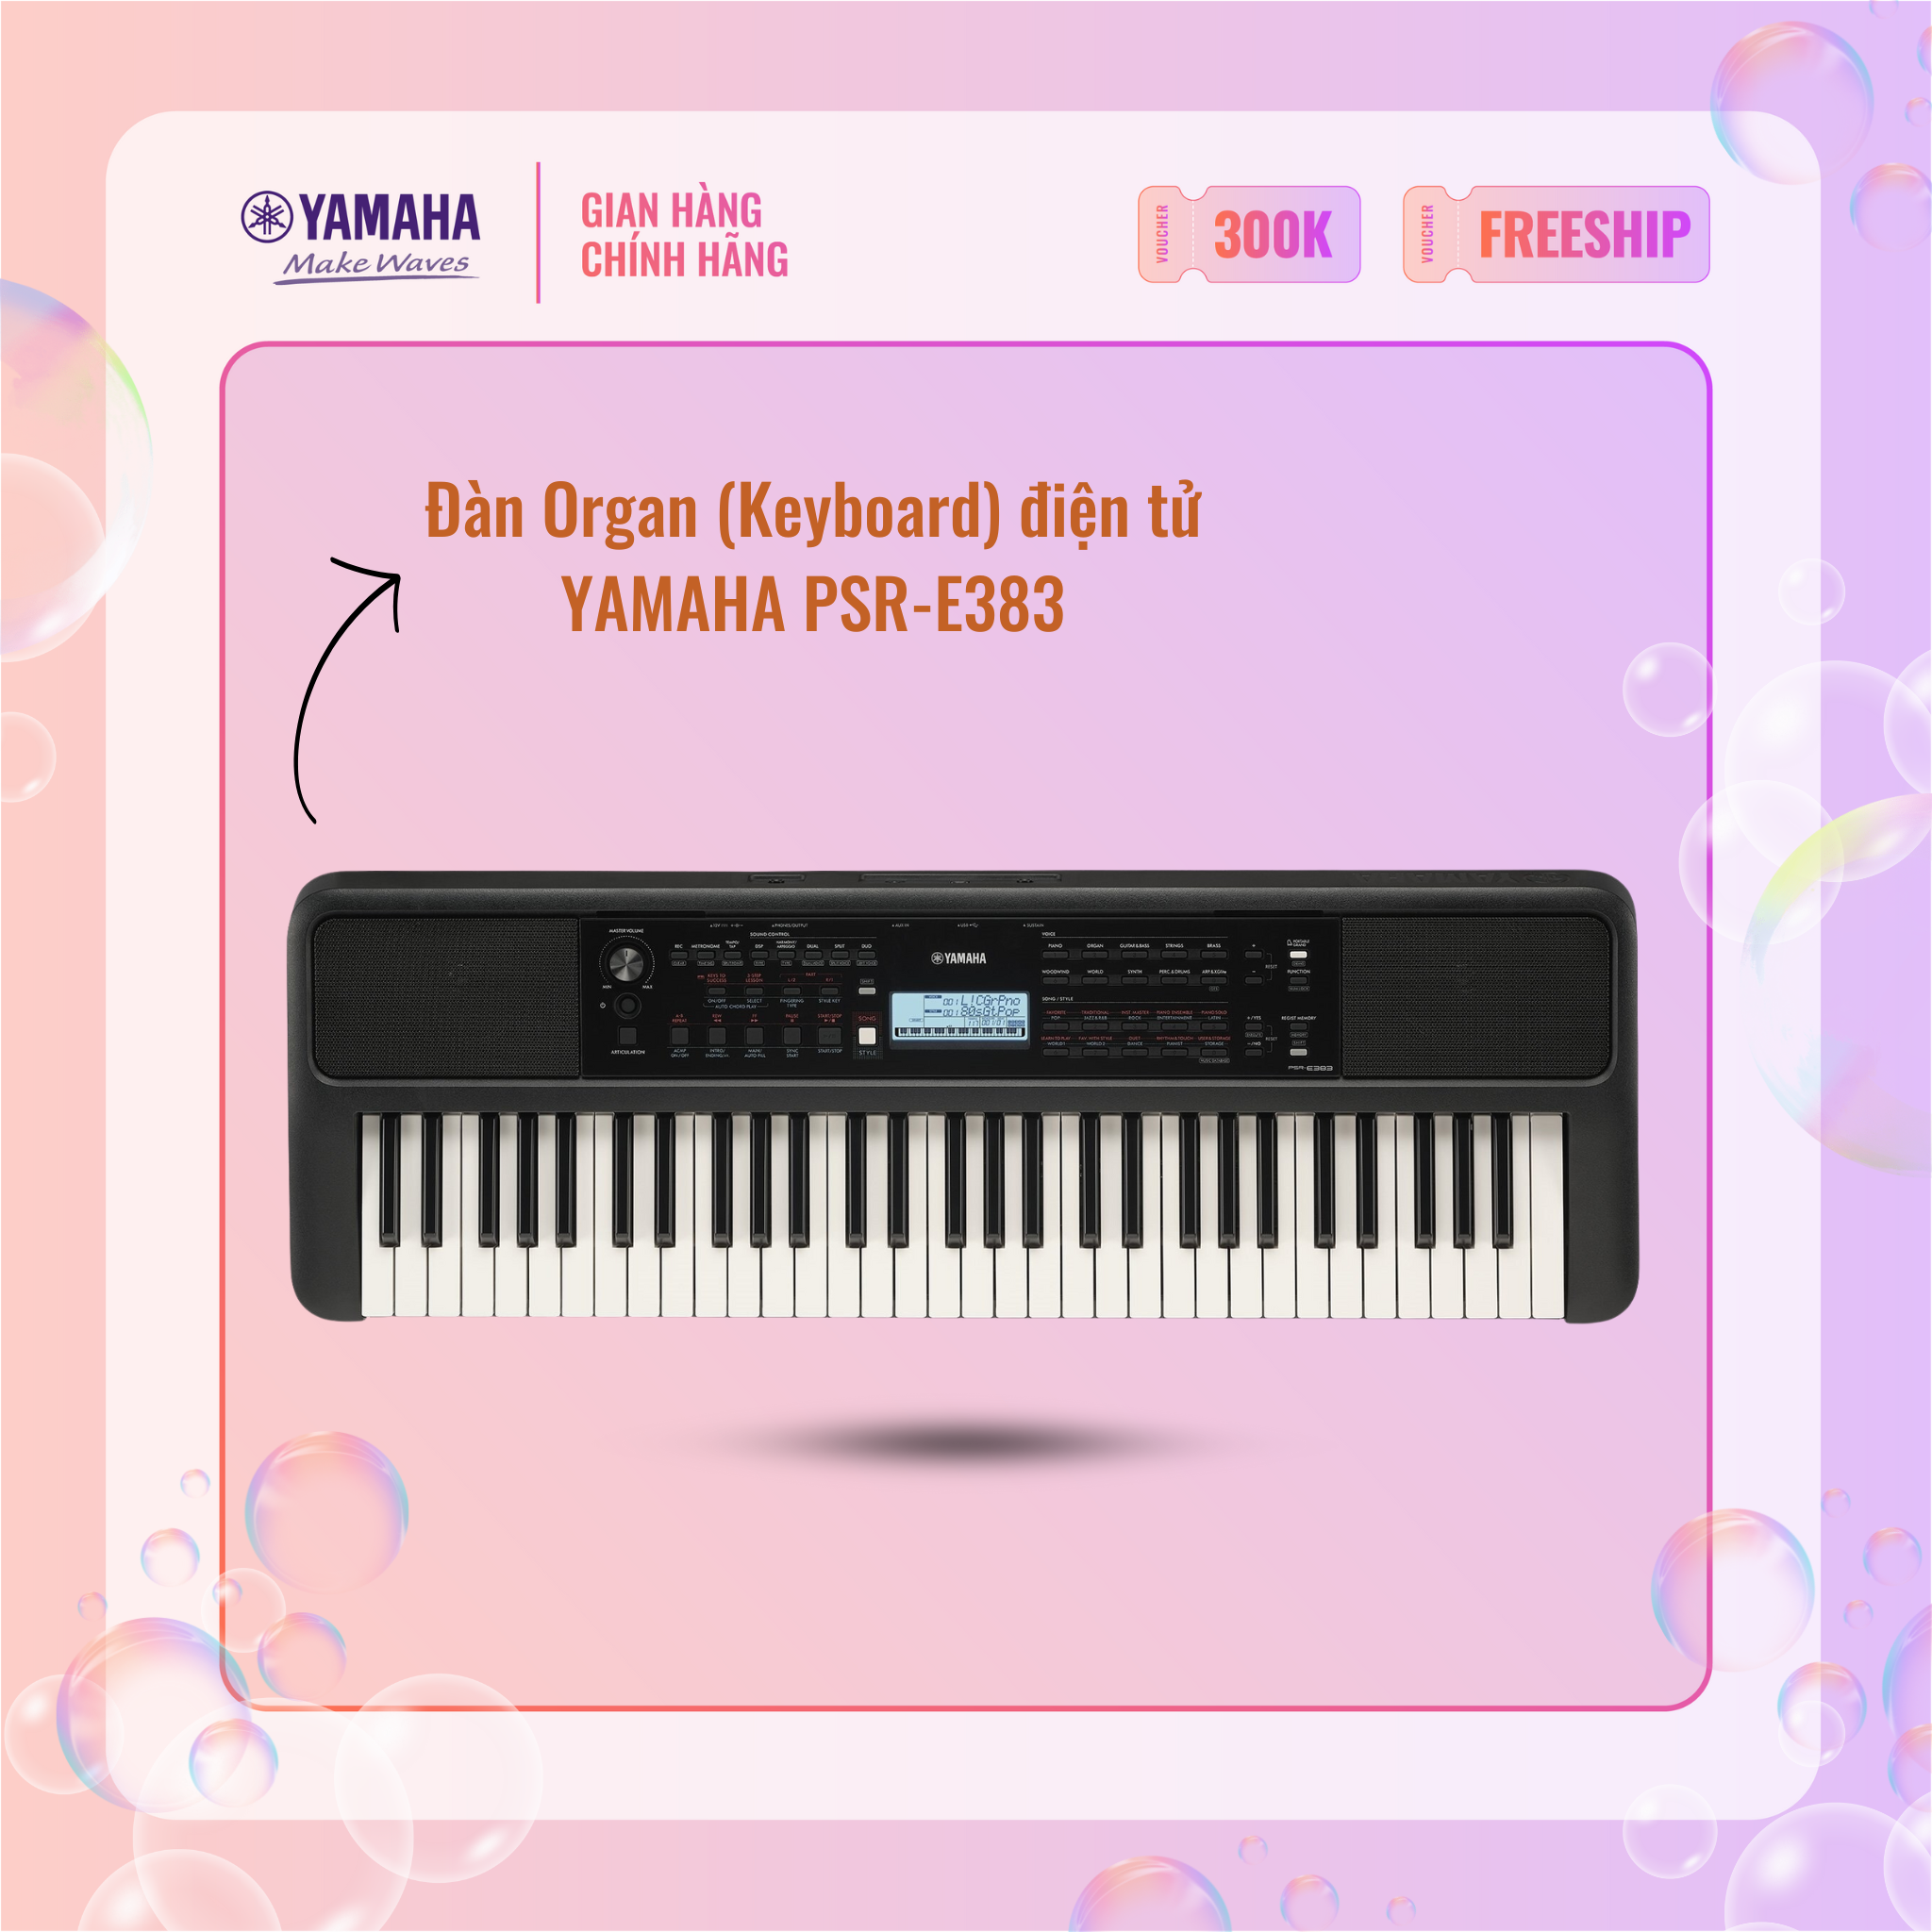 Đàn Organ (Keyboard) điện tử YAMAHA PSR-E383 - Phiên bản tiêu chuẩn dành cho người mới bắt đầu với chức năng tự học, bàn phím cảm ứng lực (Touch response),bảo hành chính hãng 12 tháng